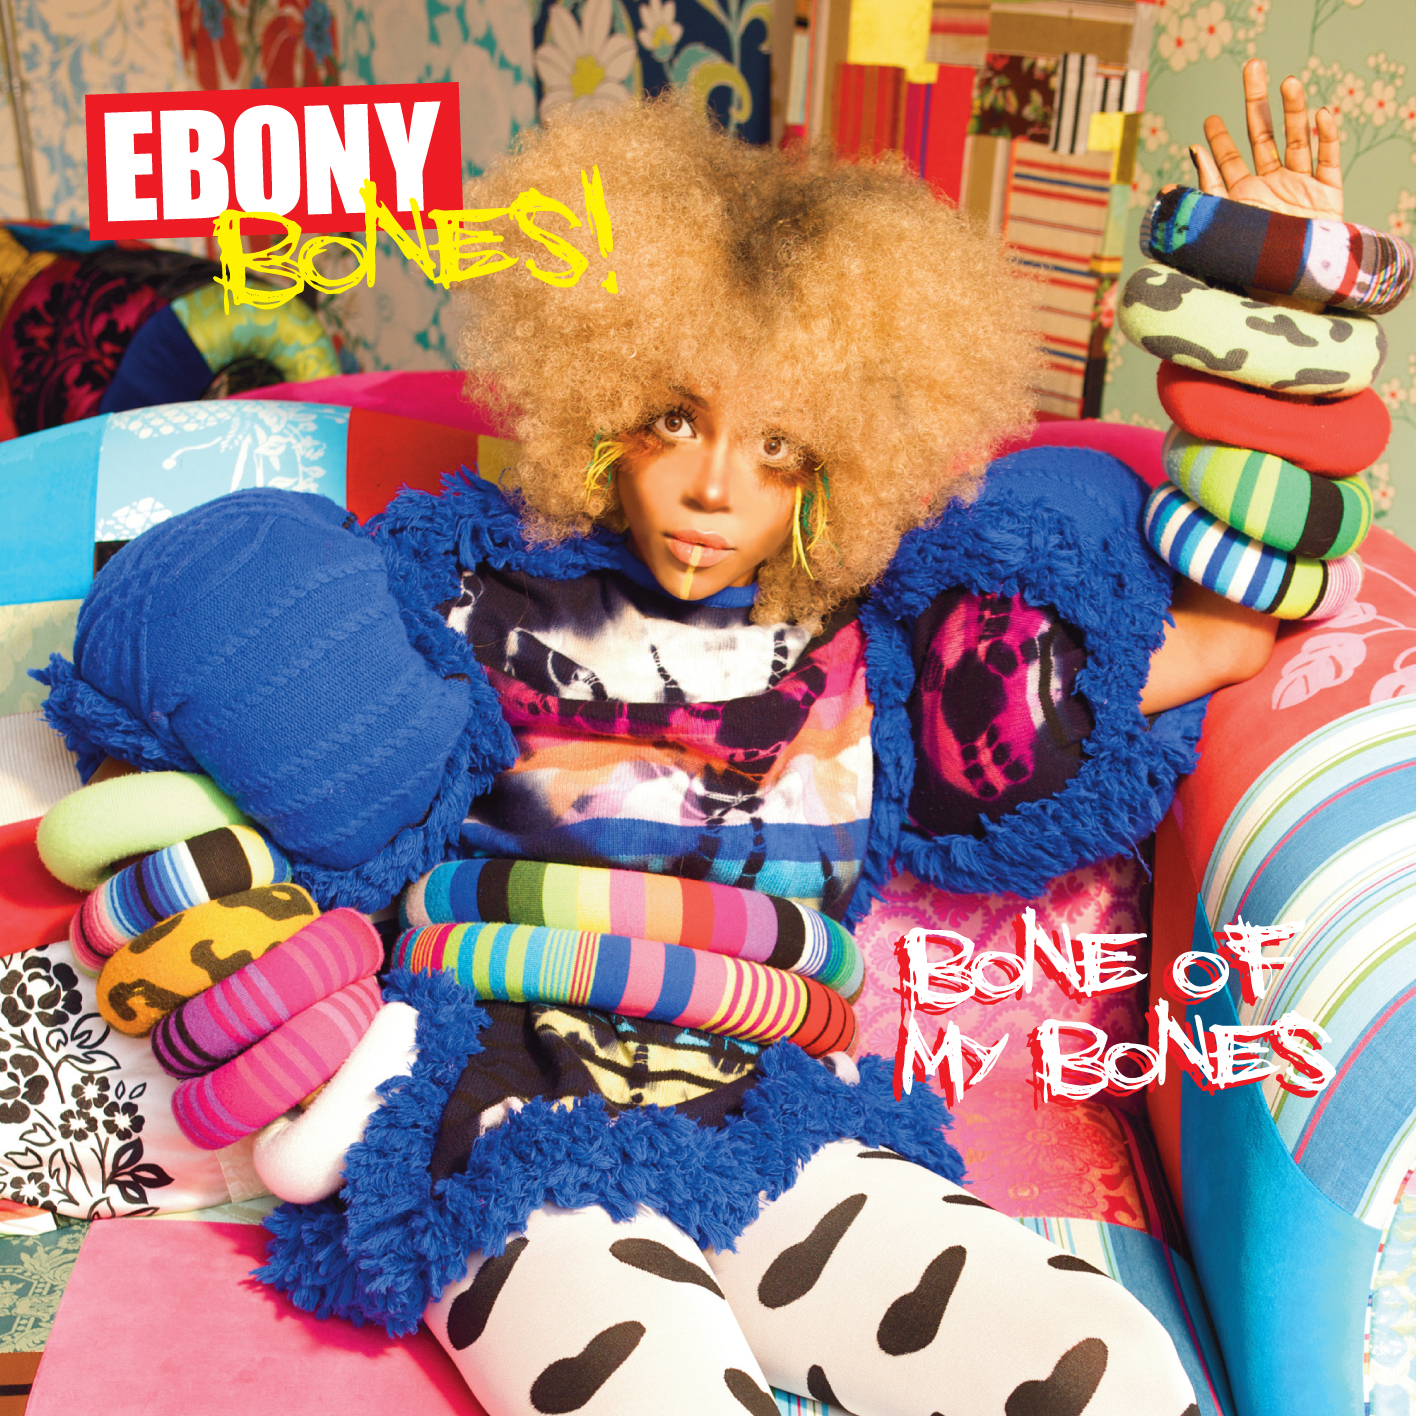 Ebony bones bones of my bones zip